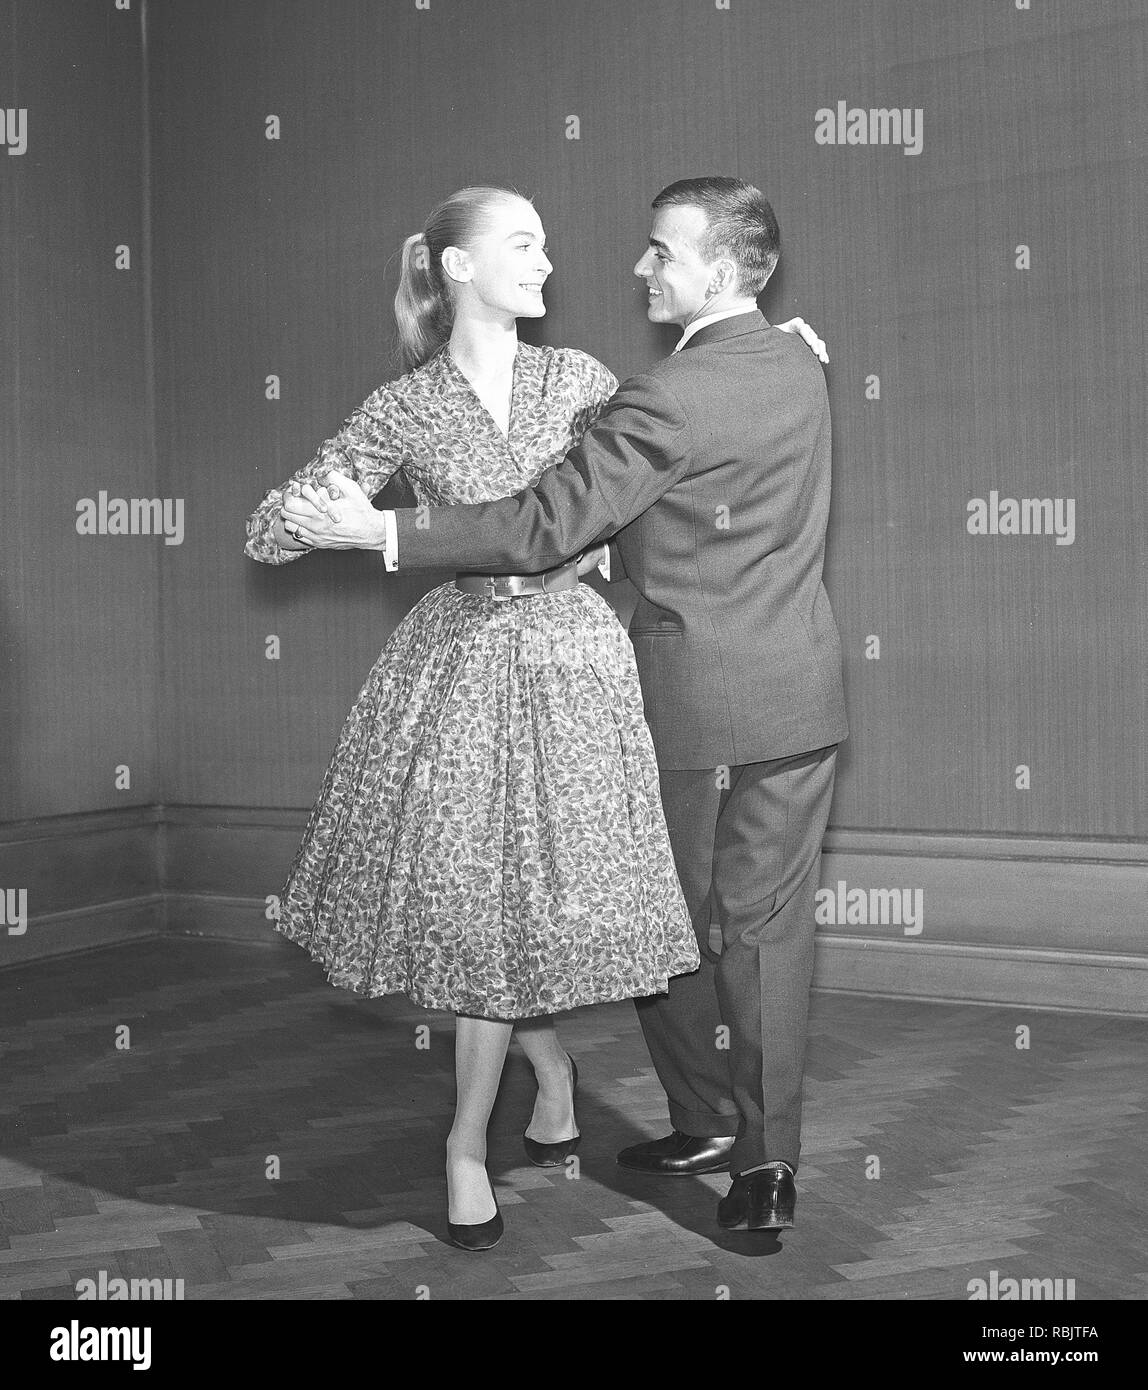 Dancing negli anni cinquanta. Una coppia di ballo negli anni cinquanta. Indossa un tipico degli anni cinquanta ampia abito. Foto Kristoffersson Ref CE36-8. La Svezia degli anni cinquanta Foto Stock